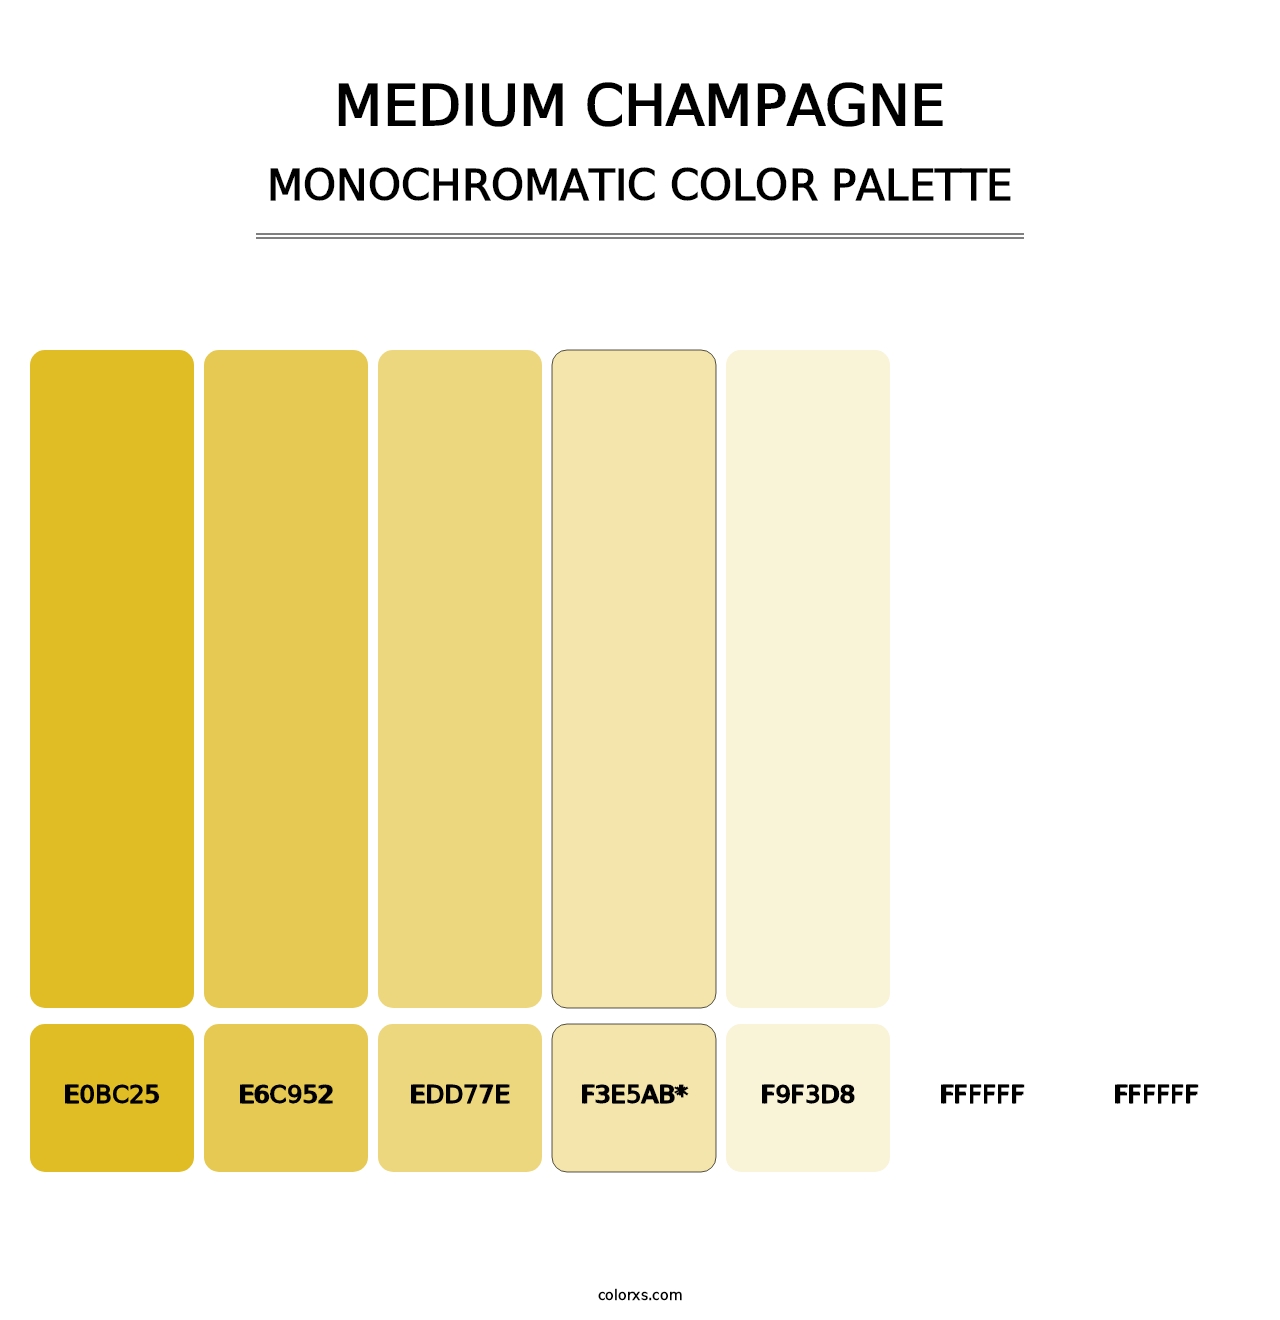 Medium Champagne - Monochromatic Color Palette